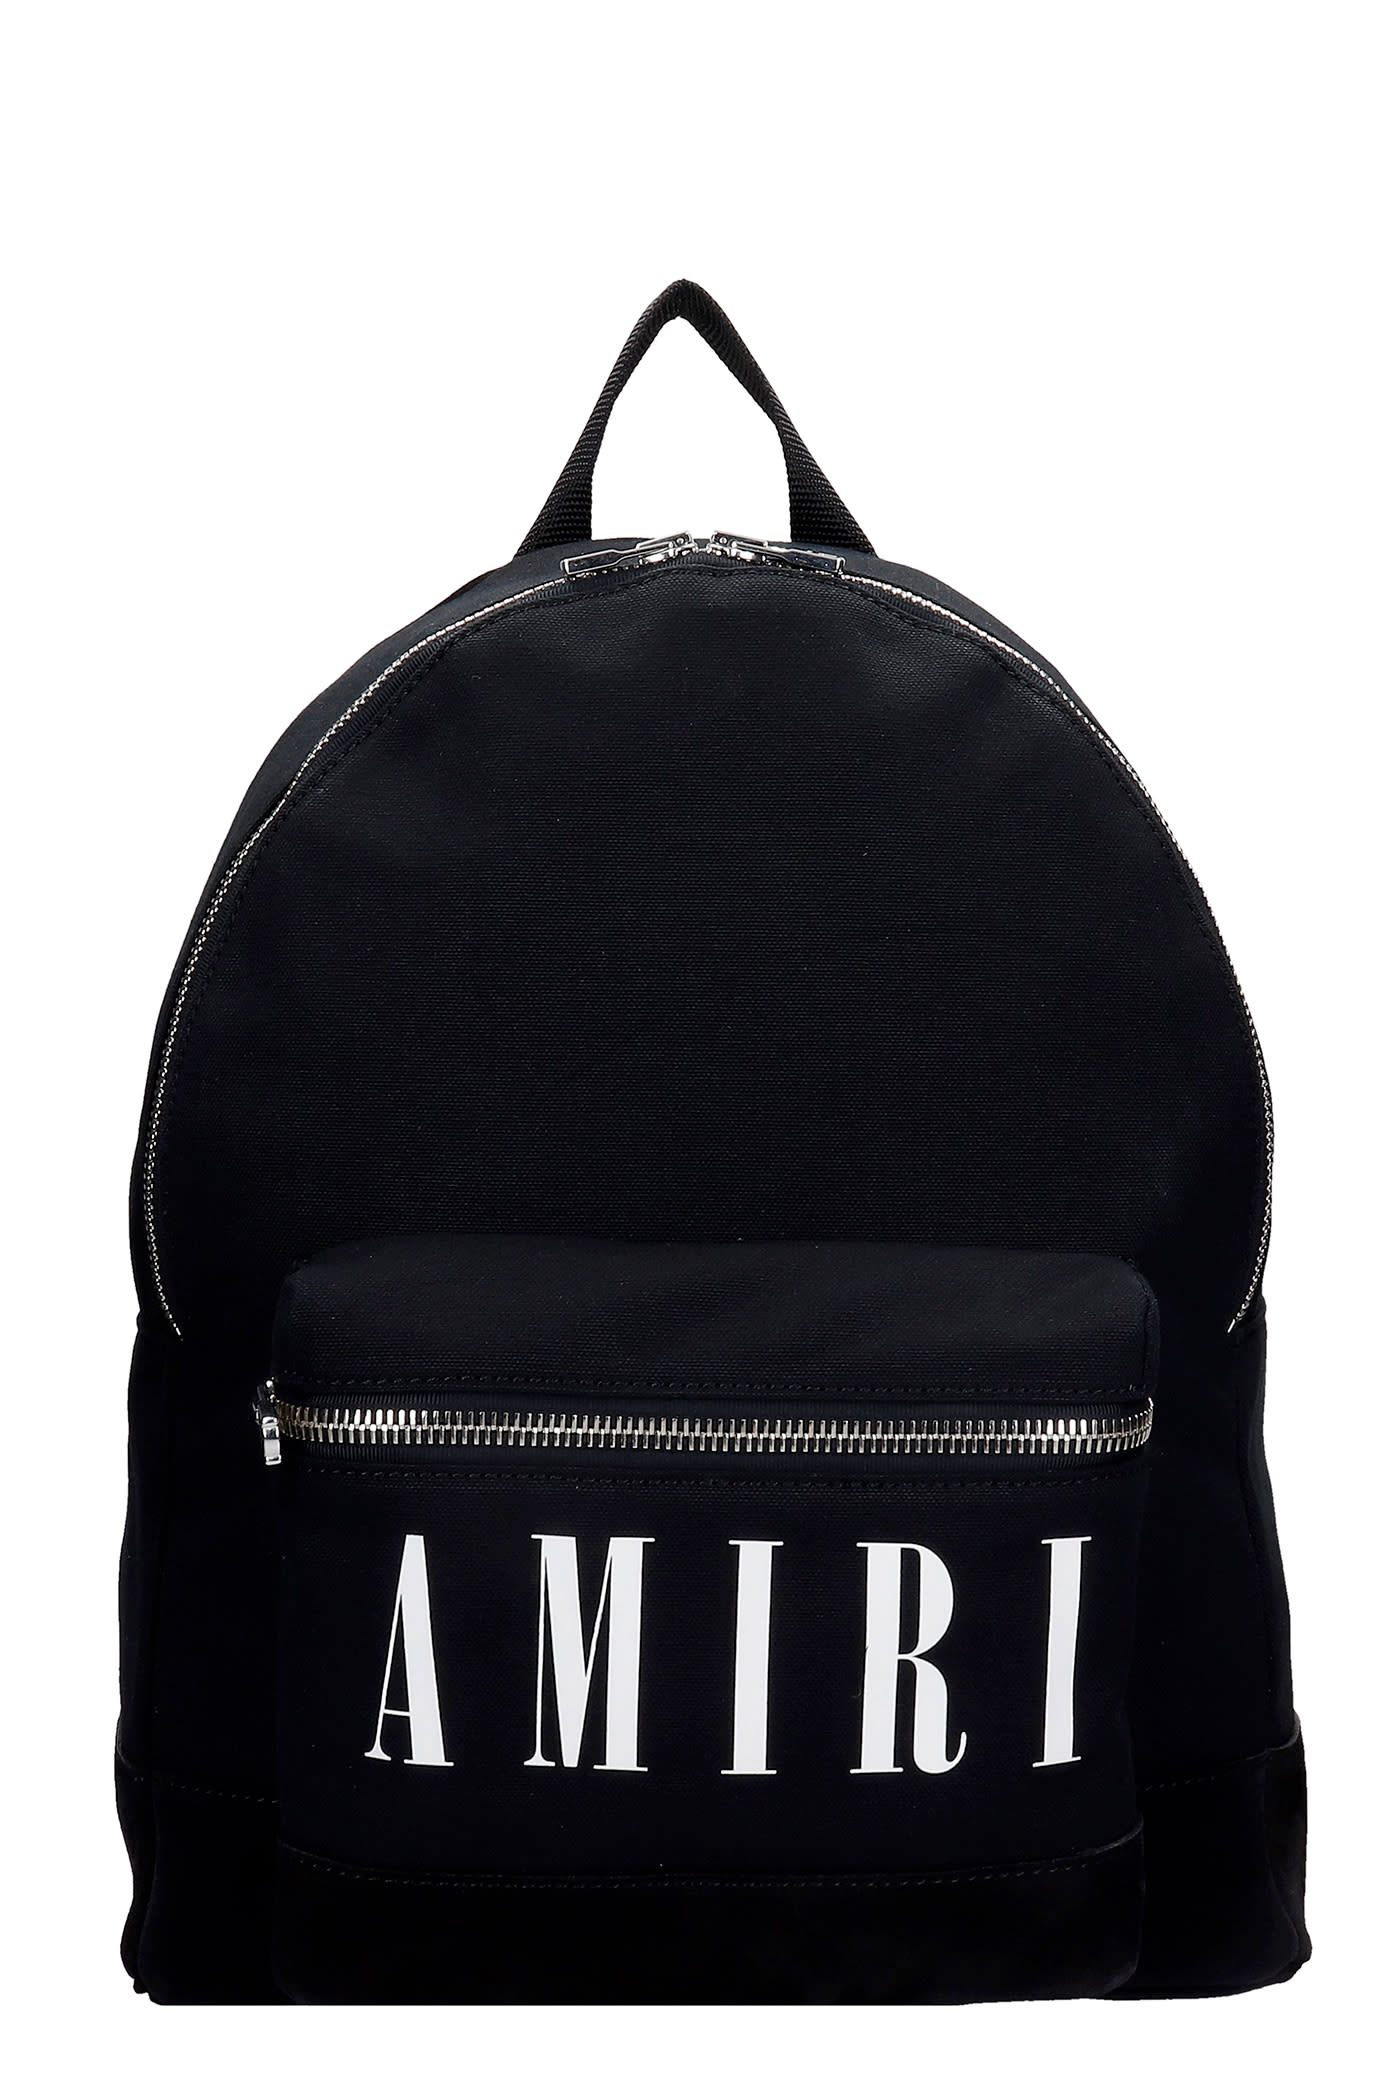 AMIRI Backpack In Black Canvas